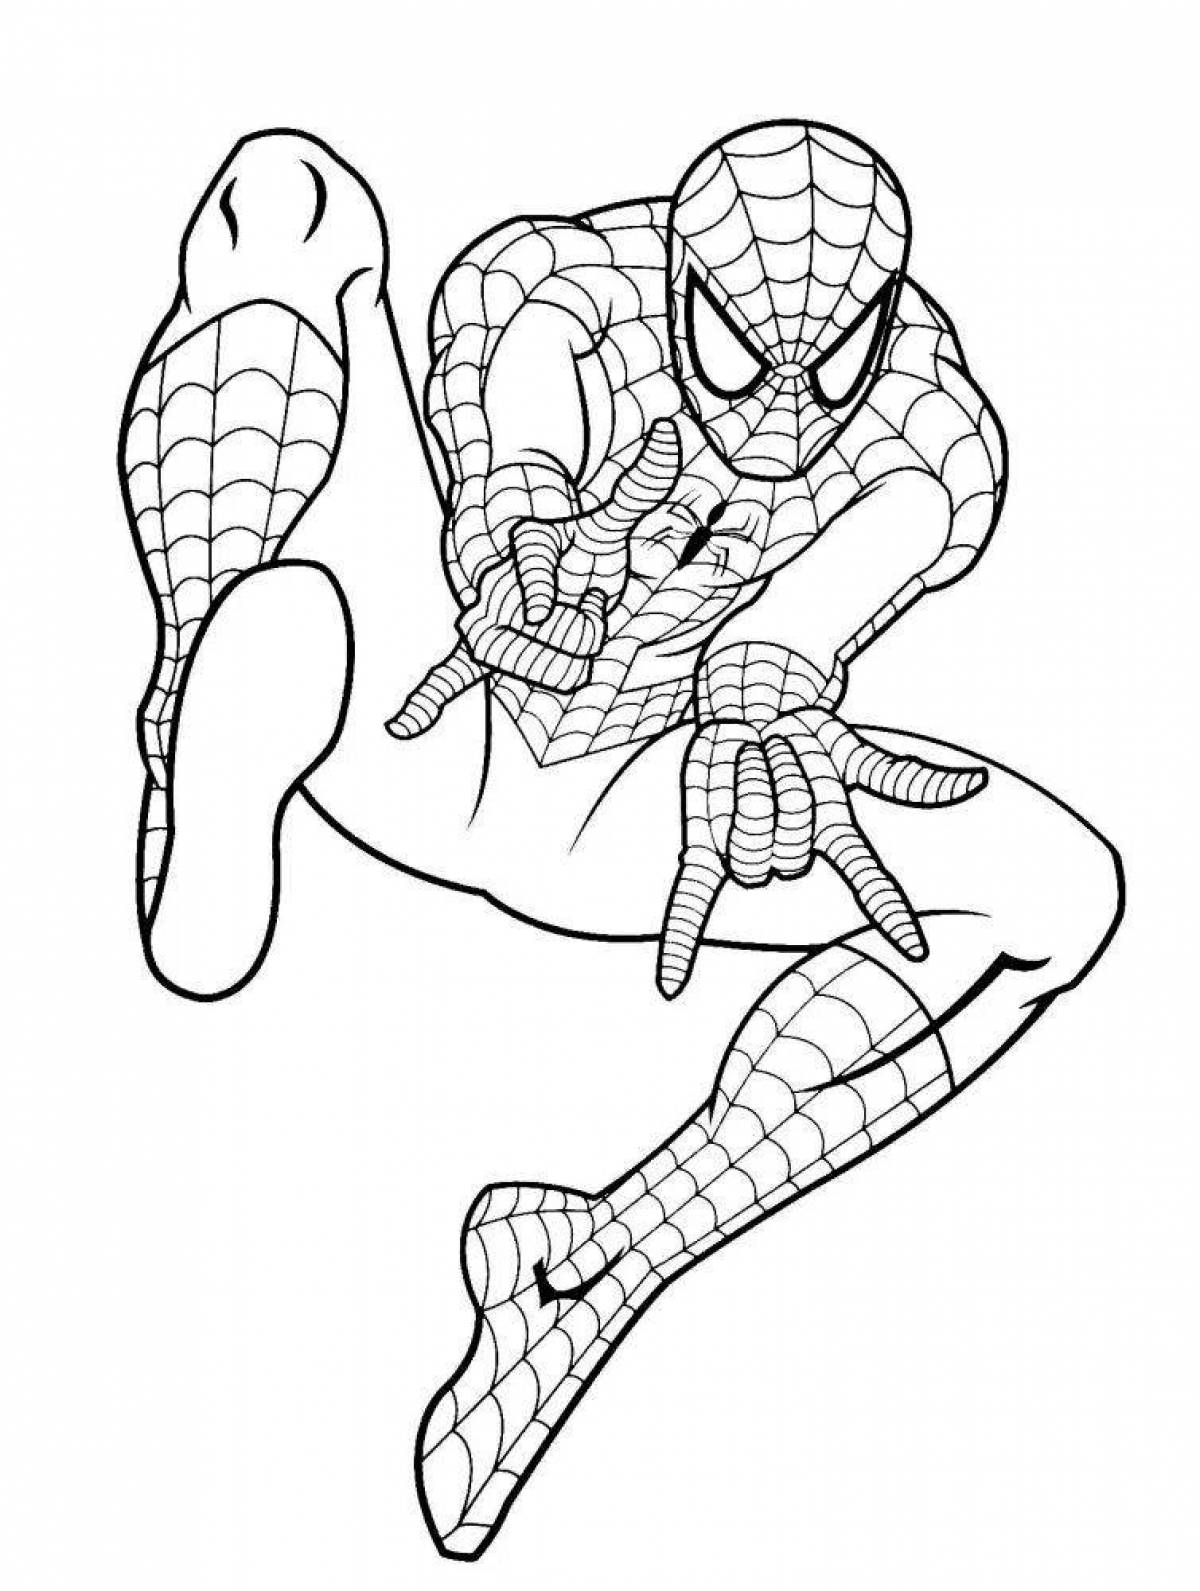 Яркая раскраска с изображением человека-паука